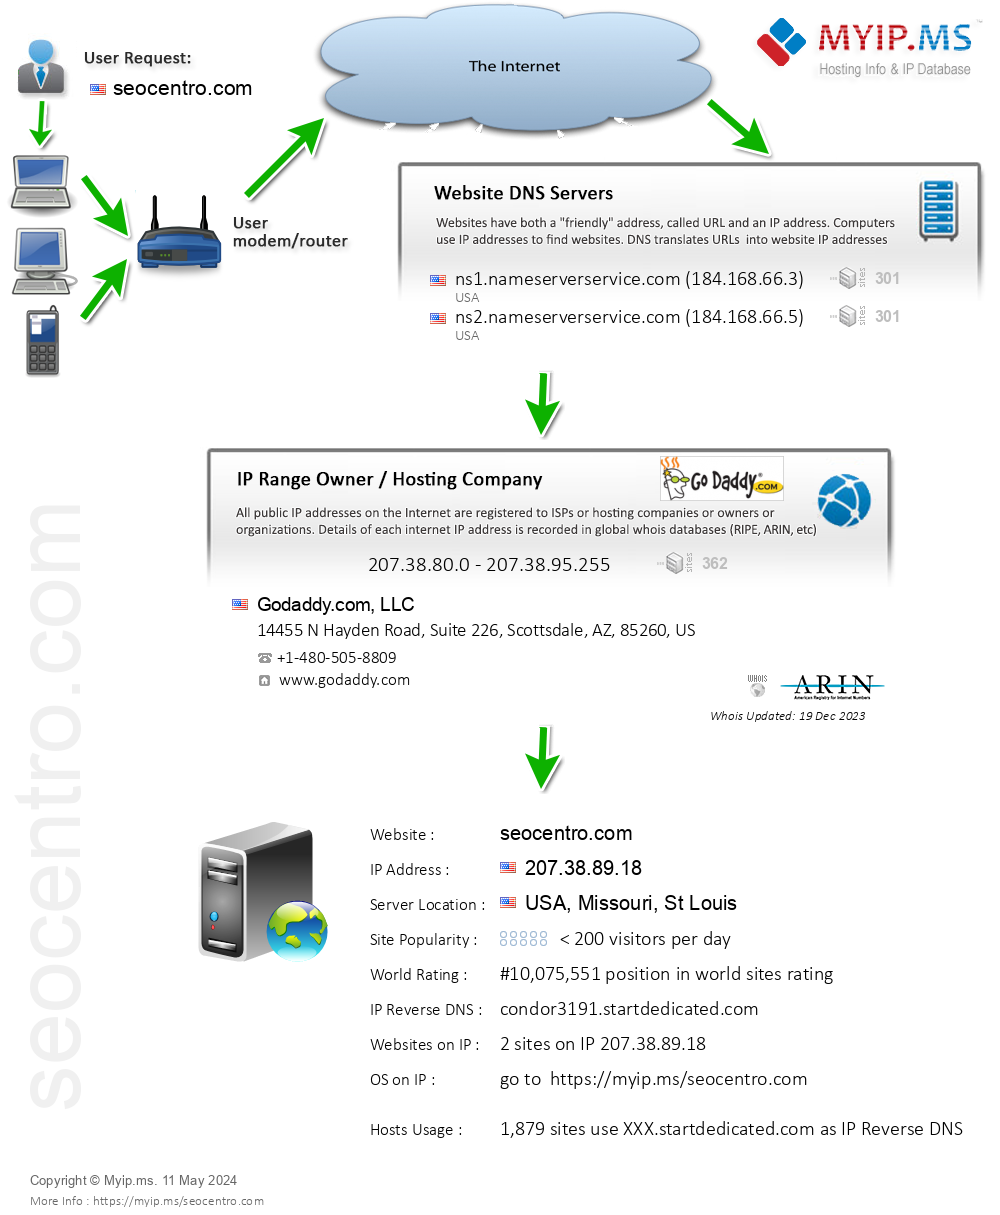 Seocentro.com - Website Hosting Visual IP Diagram